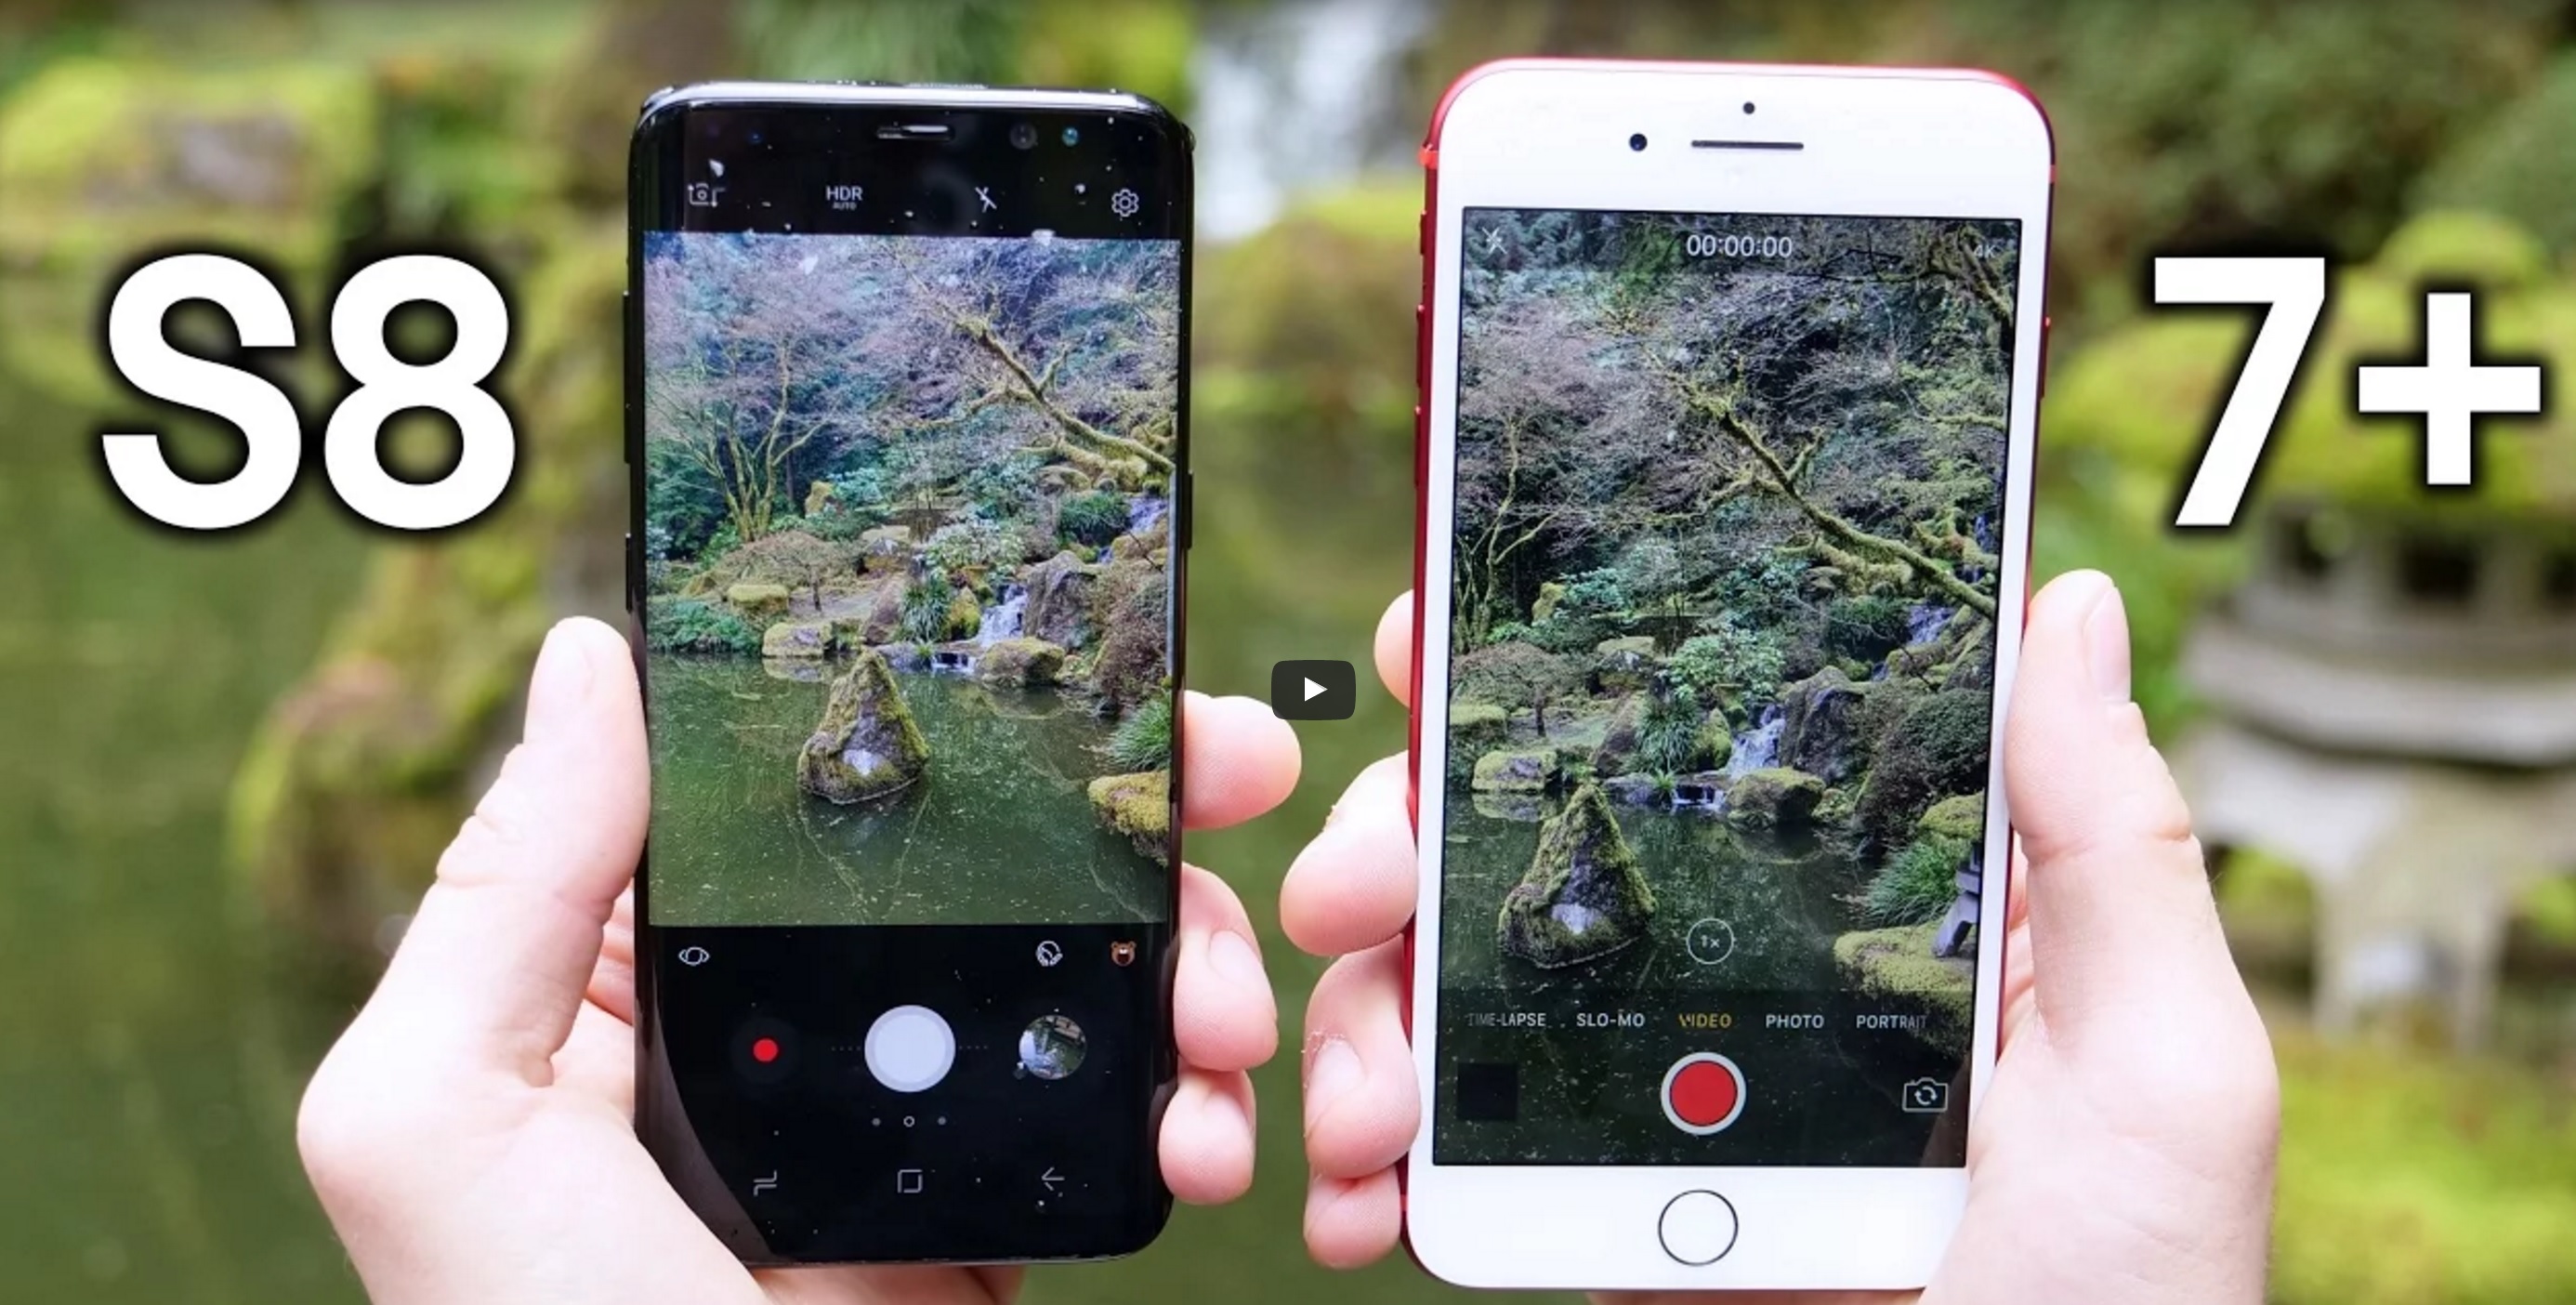 cerca sol Ennegrecer Galaxy S8 vs iPhone 7 Plus -¿Cuál tiene mejor cámara, rendimiento y resiste  más al agua? (Video) - TEC